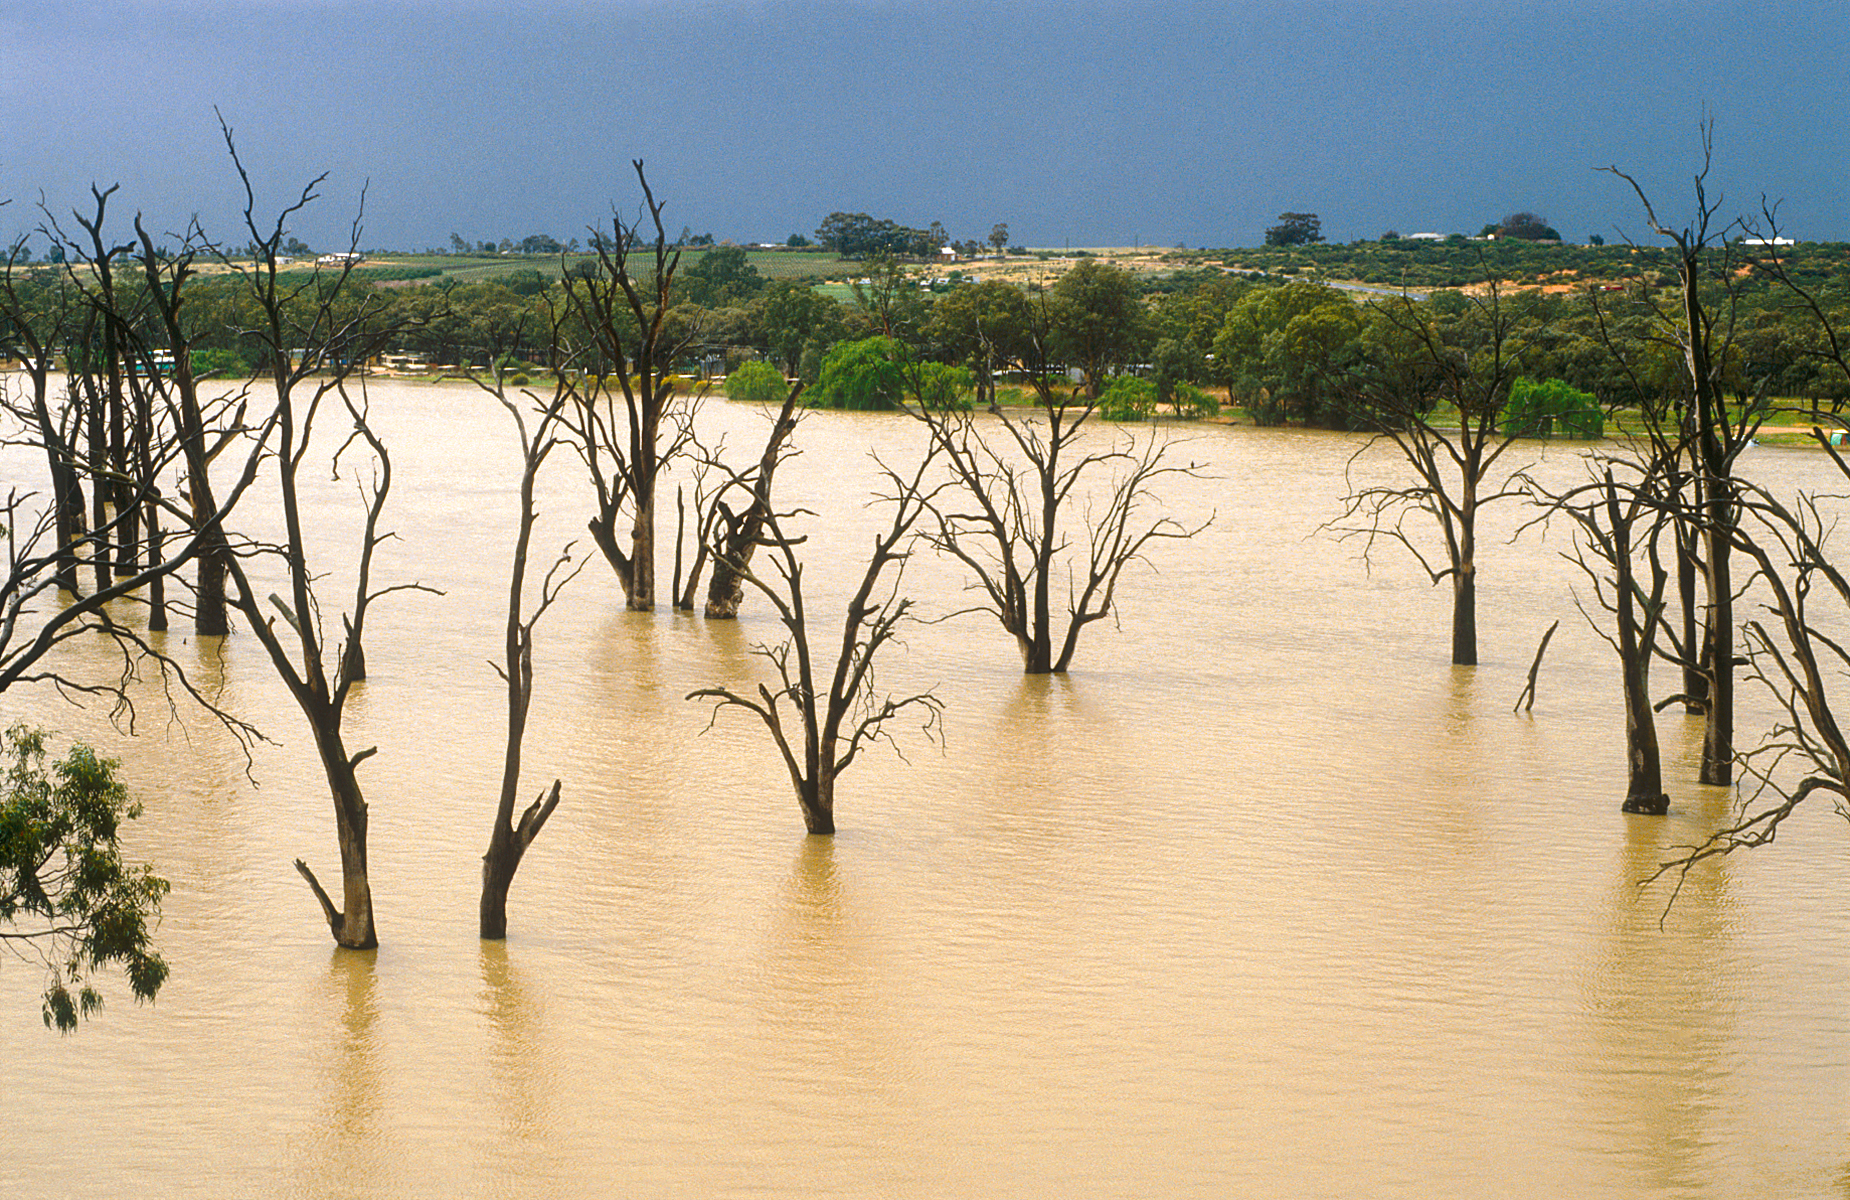 Dead gum trees in the Murray River near Blanchetown, SA. 1989. (W. van Aken, 1989)